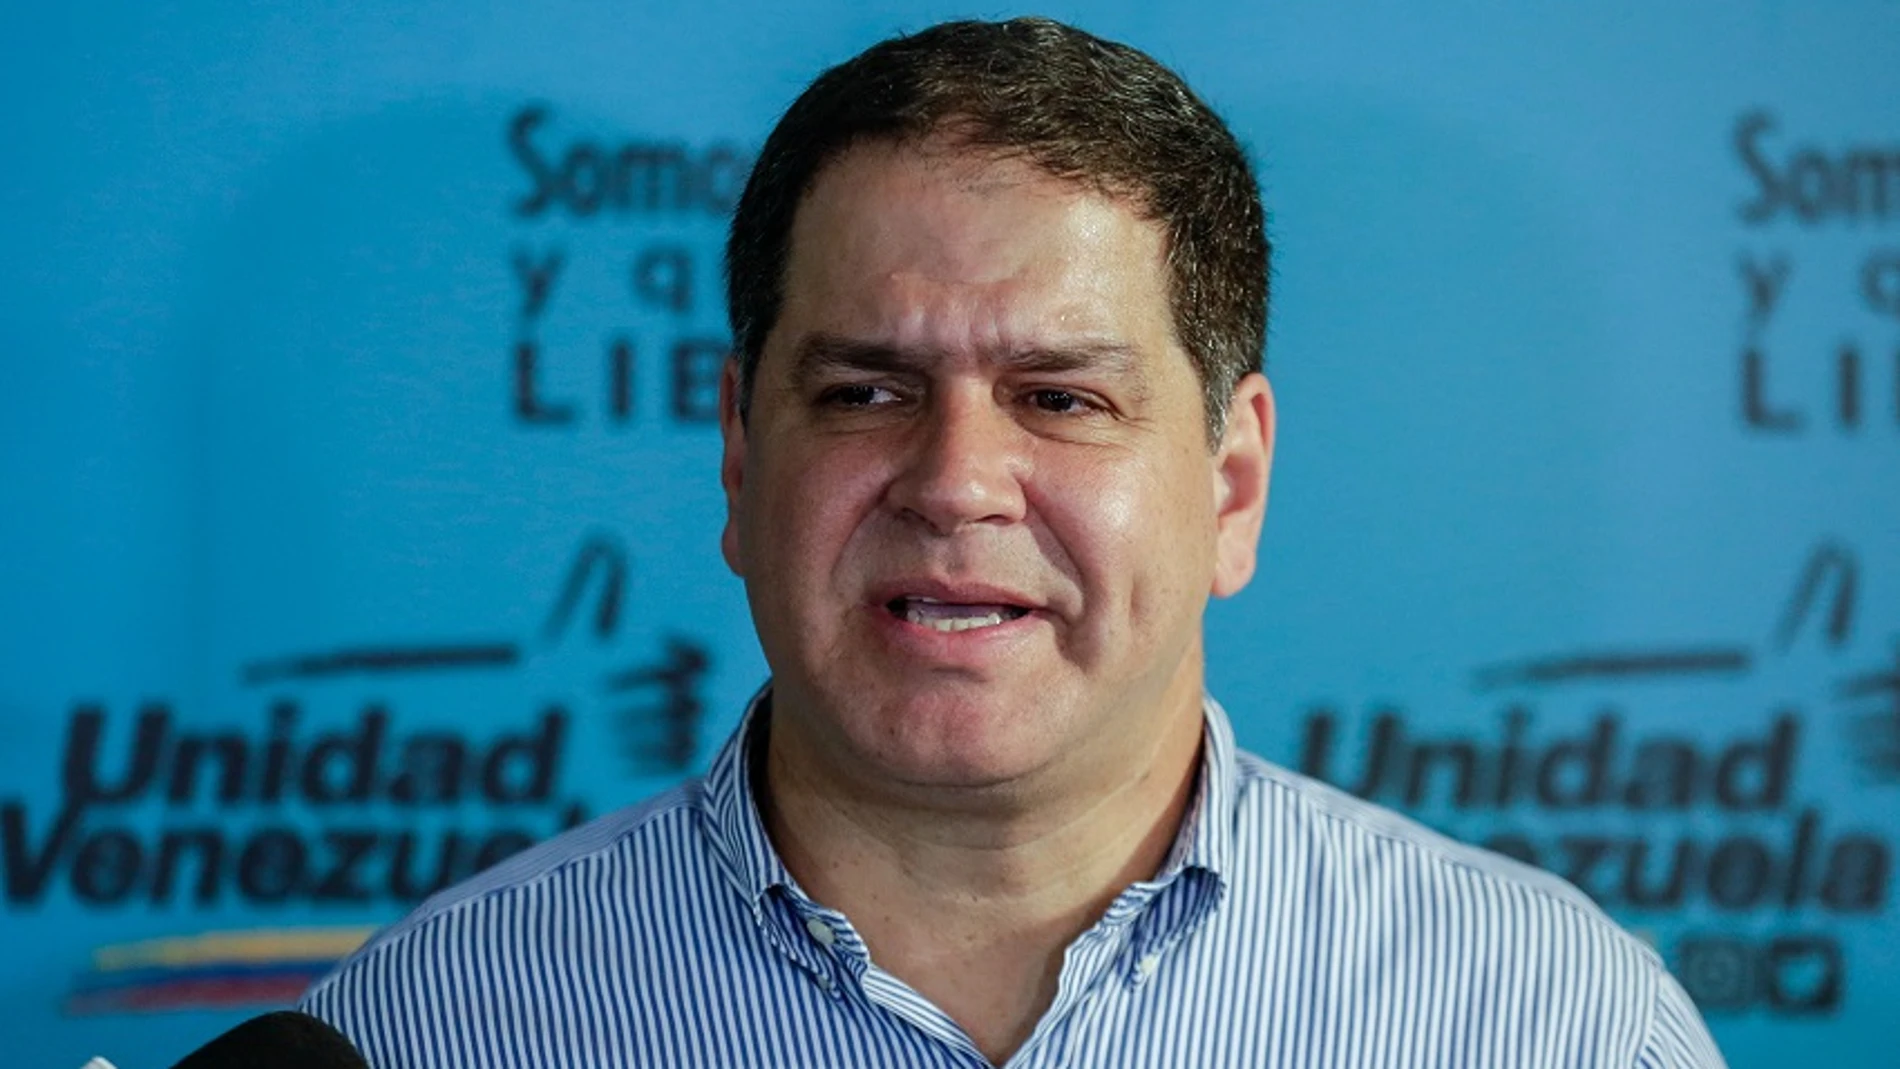 El diputado Luis Florido habla en una rueda de prensa en Caracas, Venezuela